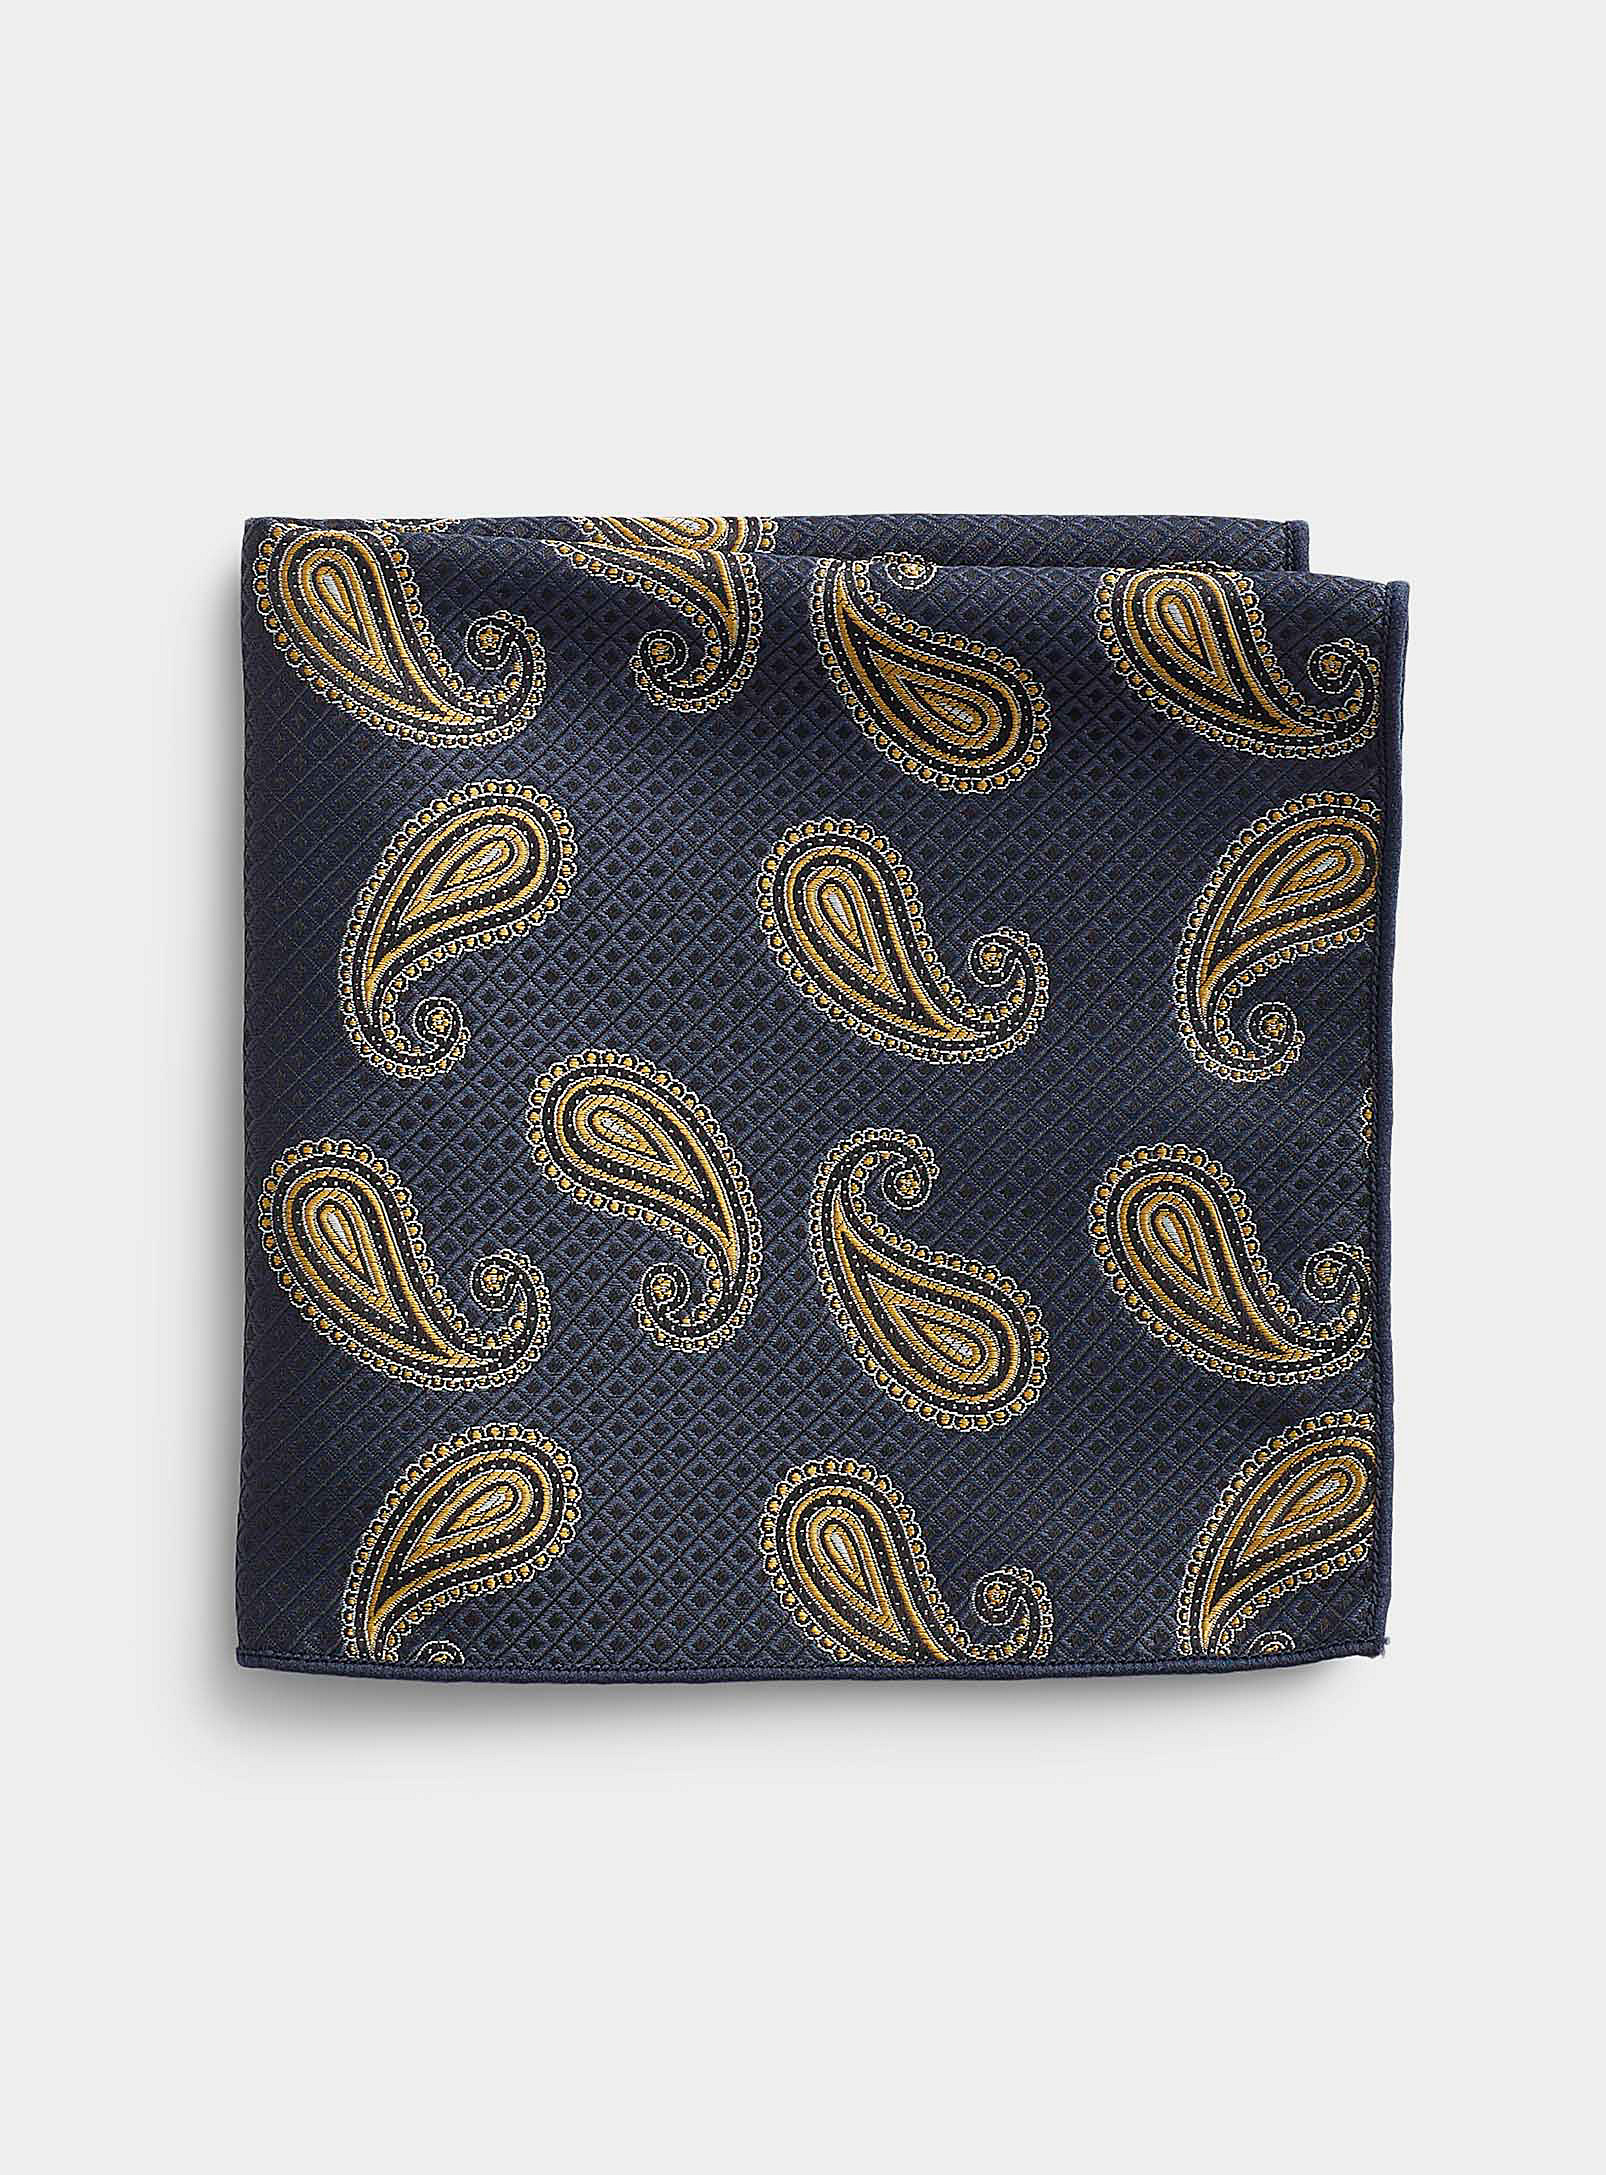 Selected - Men's Jacquard pattern pocket square